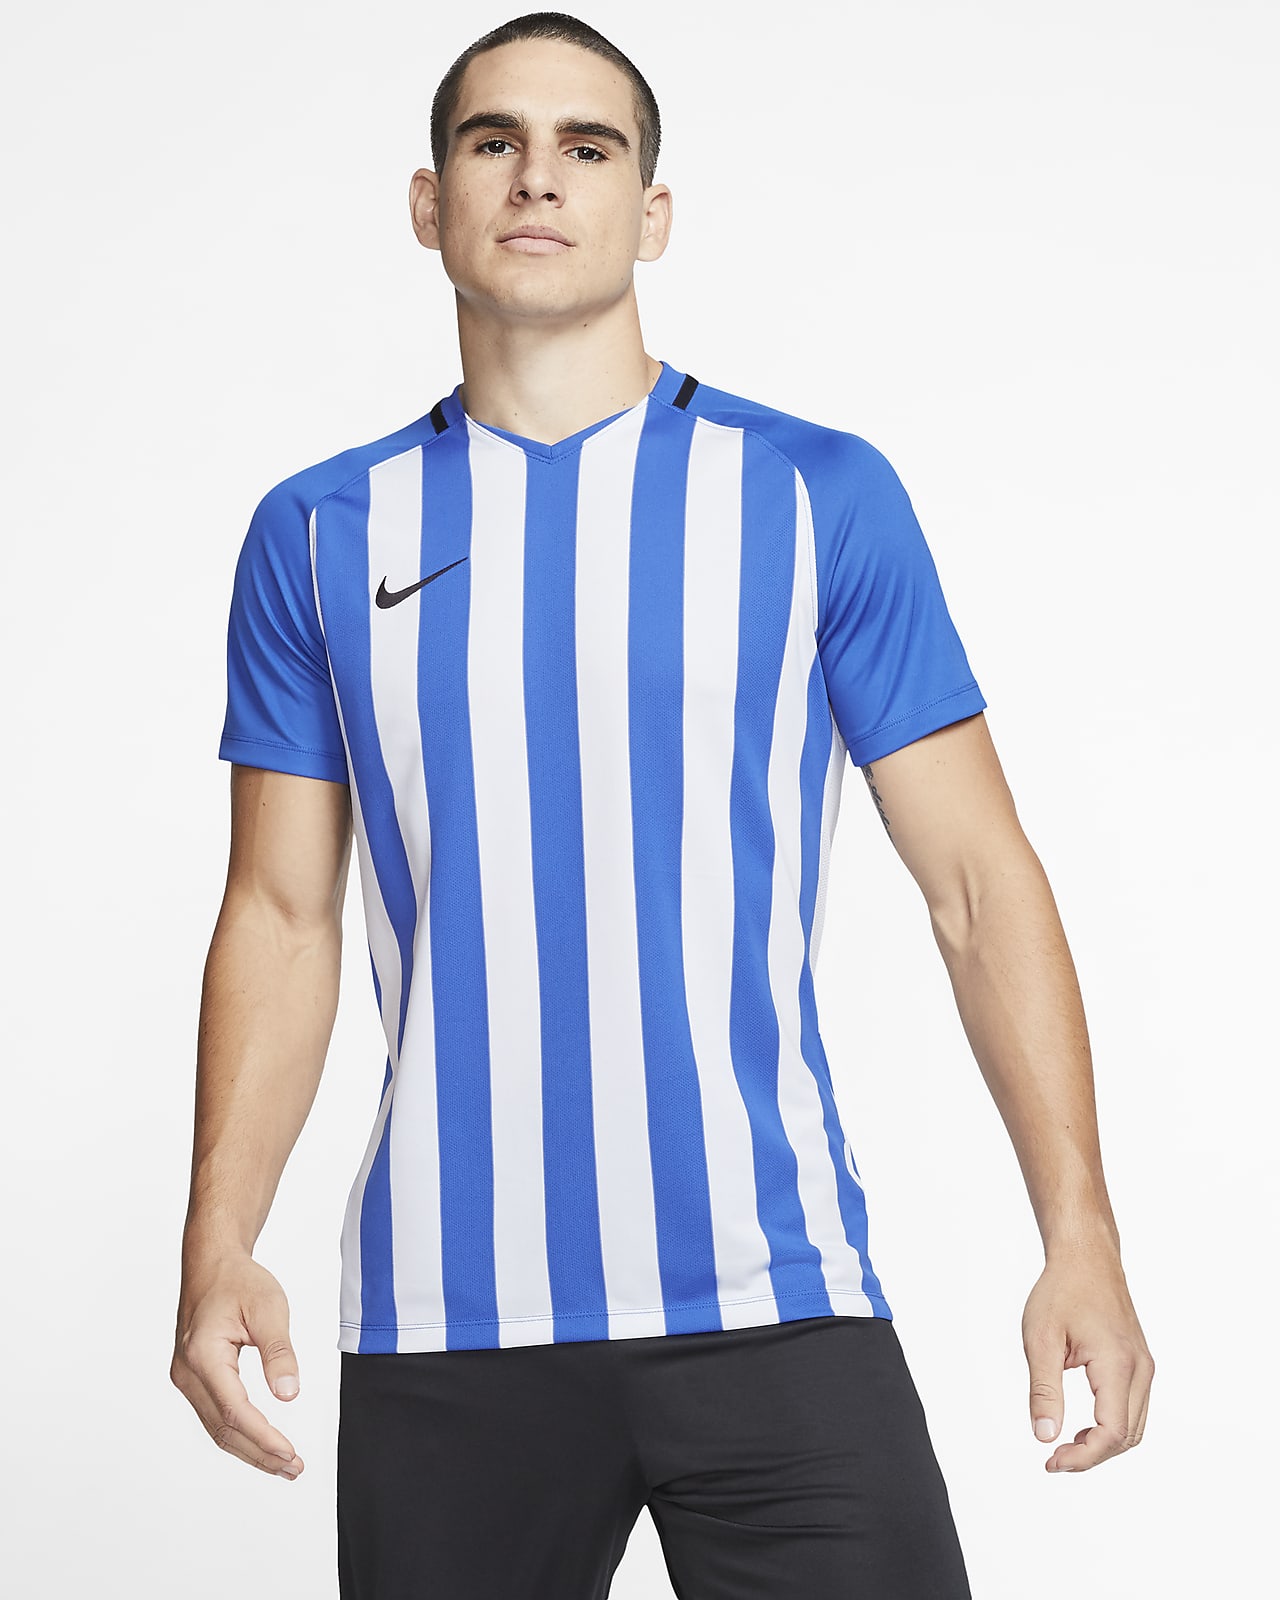 Striped Soccer Jersey. Nike JP